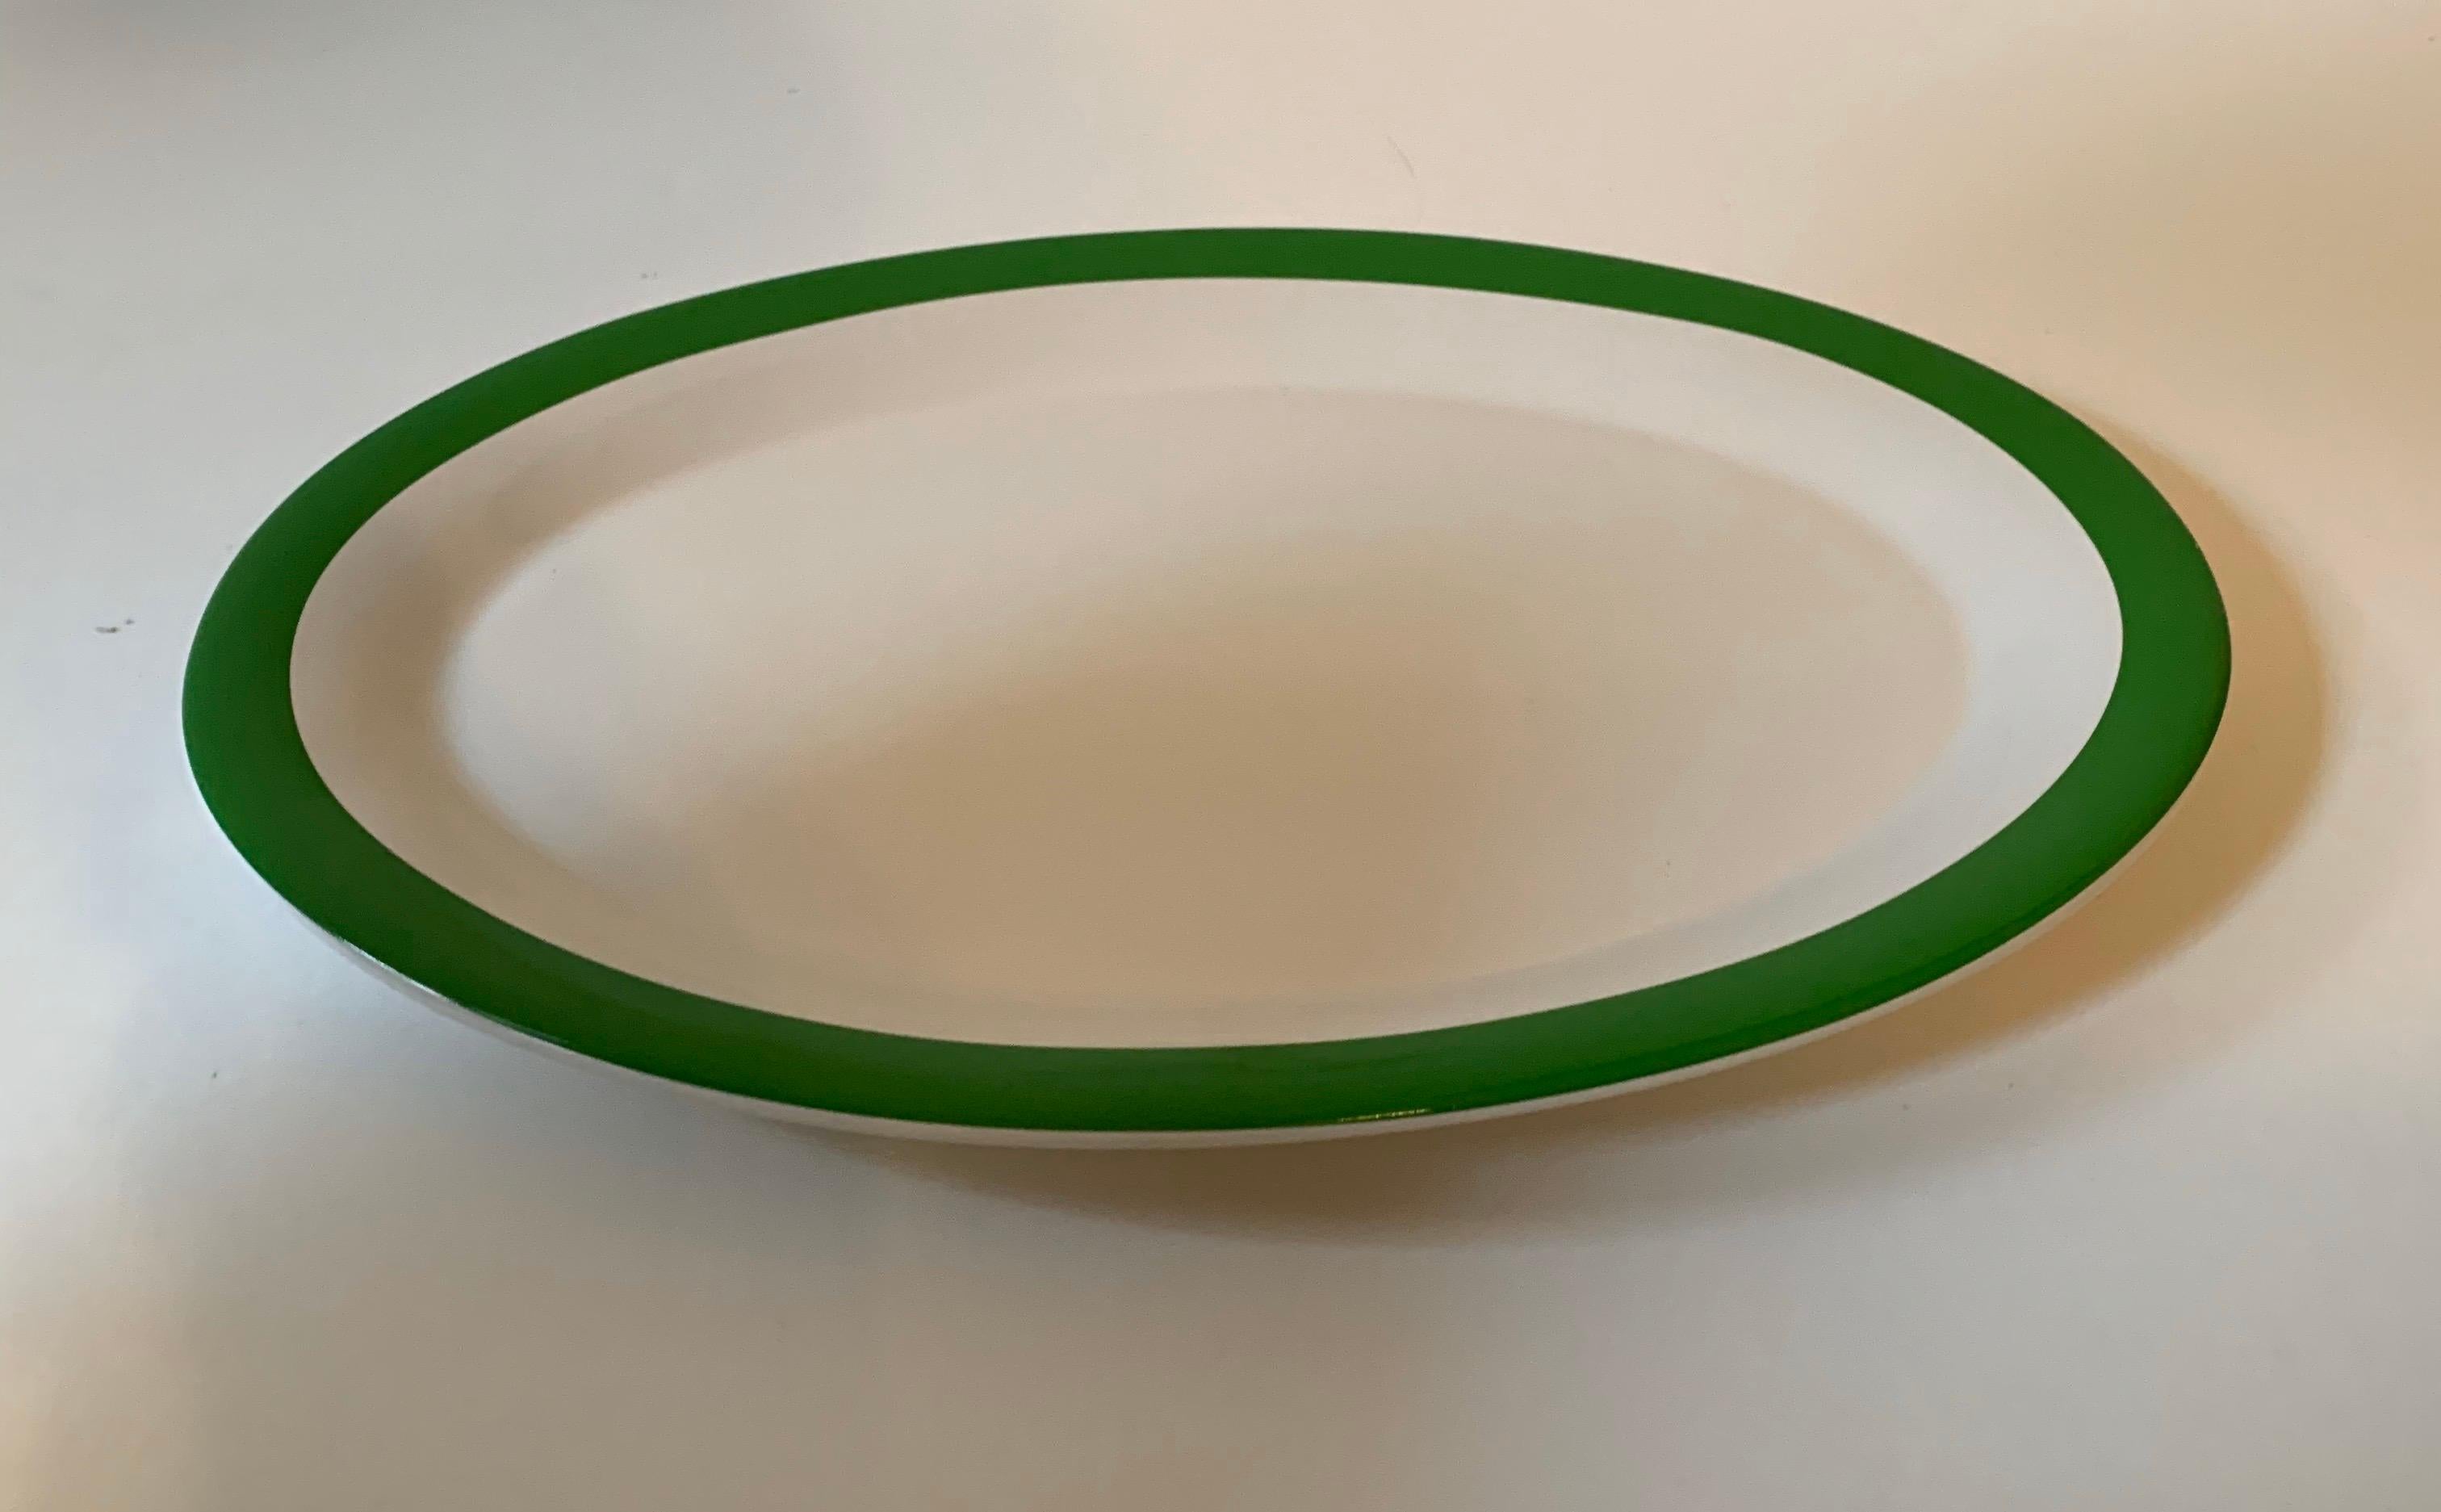 Ovale Servierplatte aus Knochenporzellan von Kate Spade New York mit dem Muster Rutherford Circle Green von Lenox.

Grüner Rand auf Weiß.

Größe: 14,25 Zoll L x 10,5 Zoll B.
 